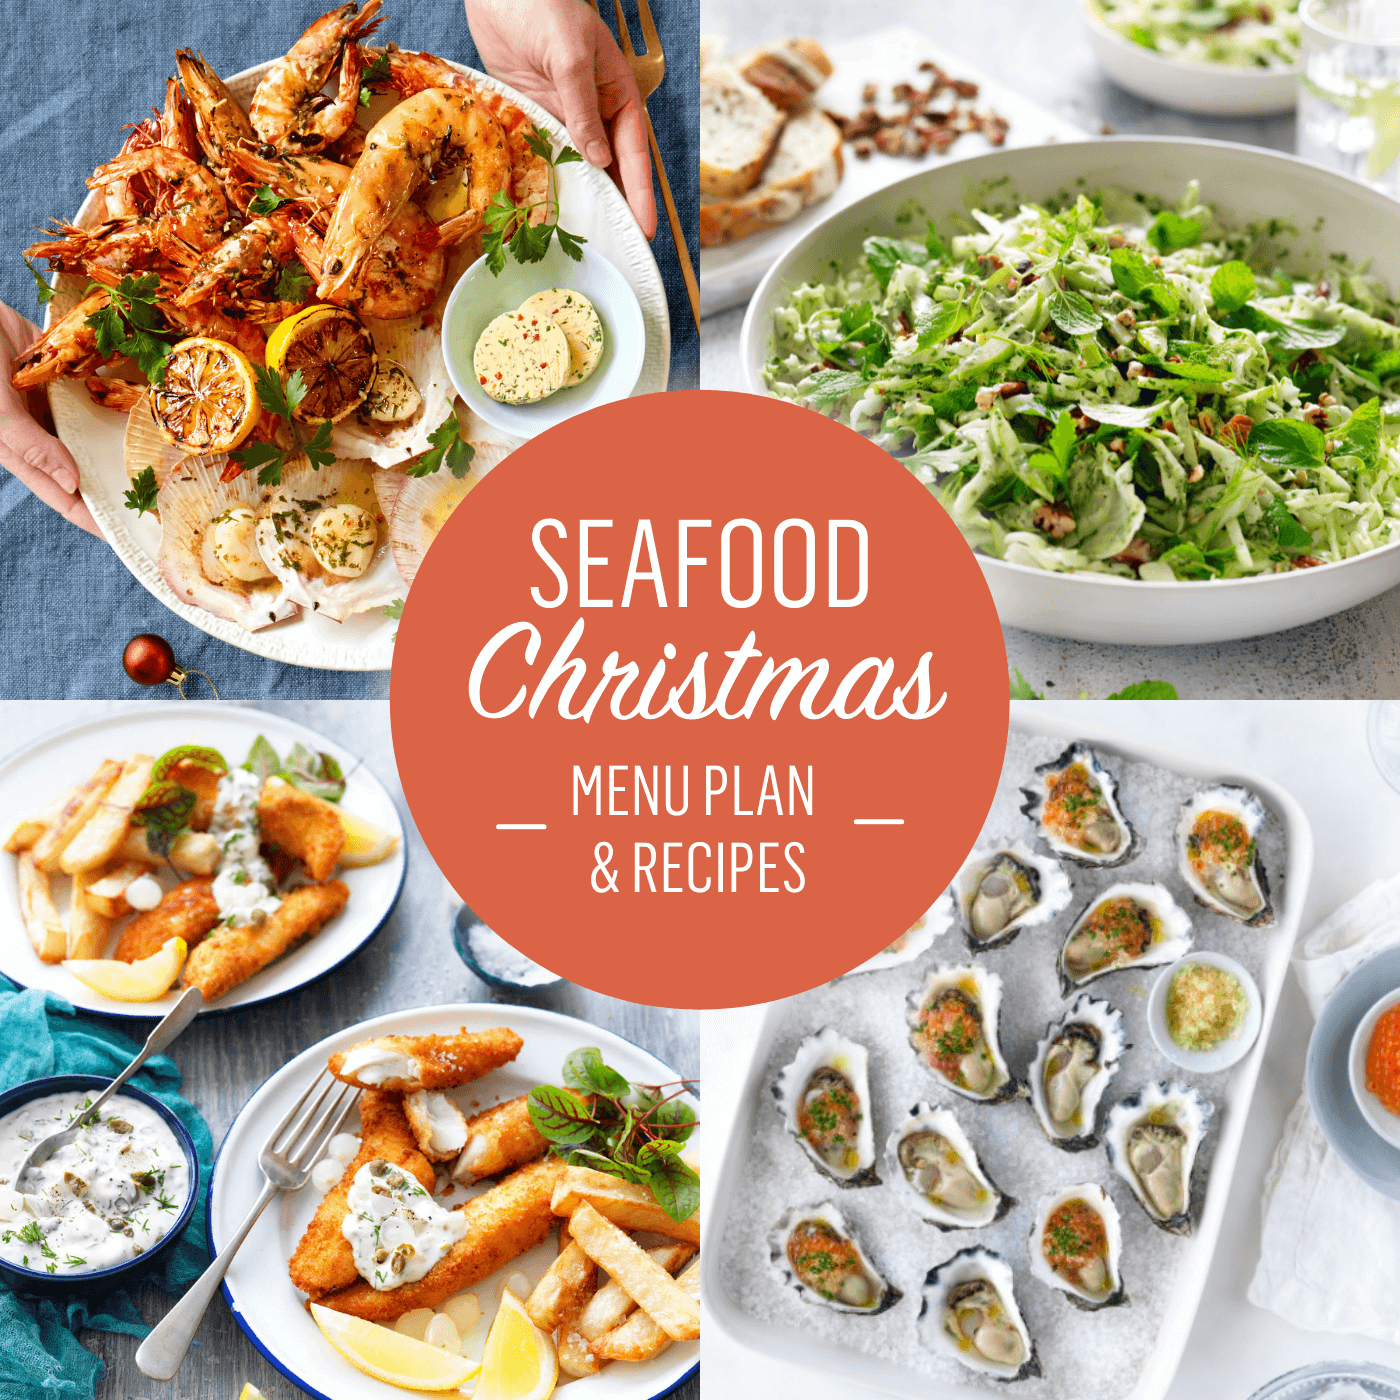 Seafood Christmas menu